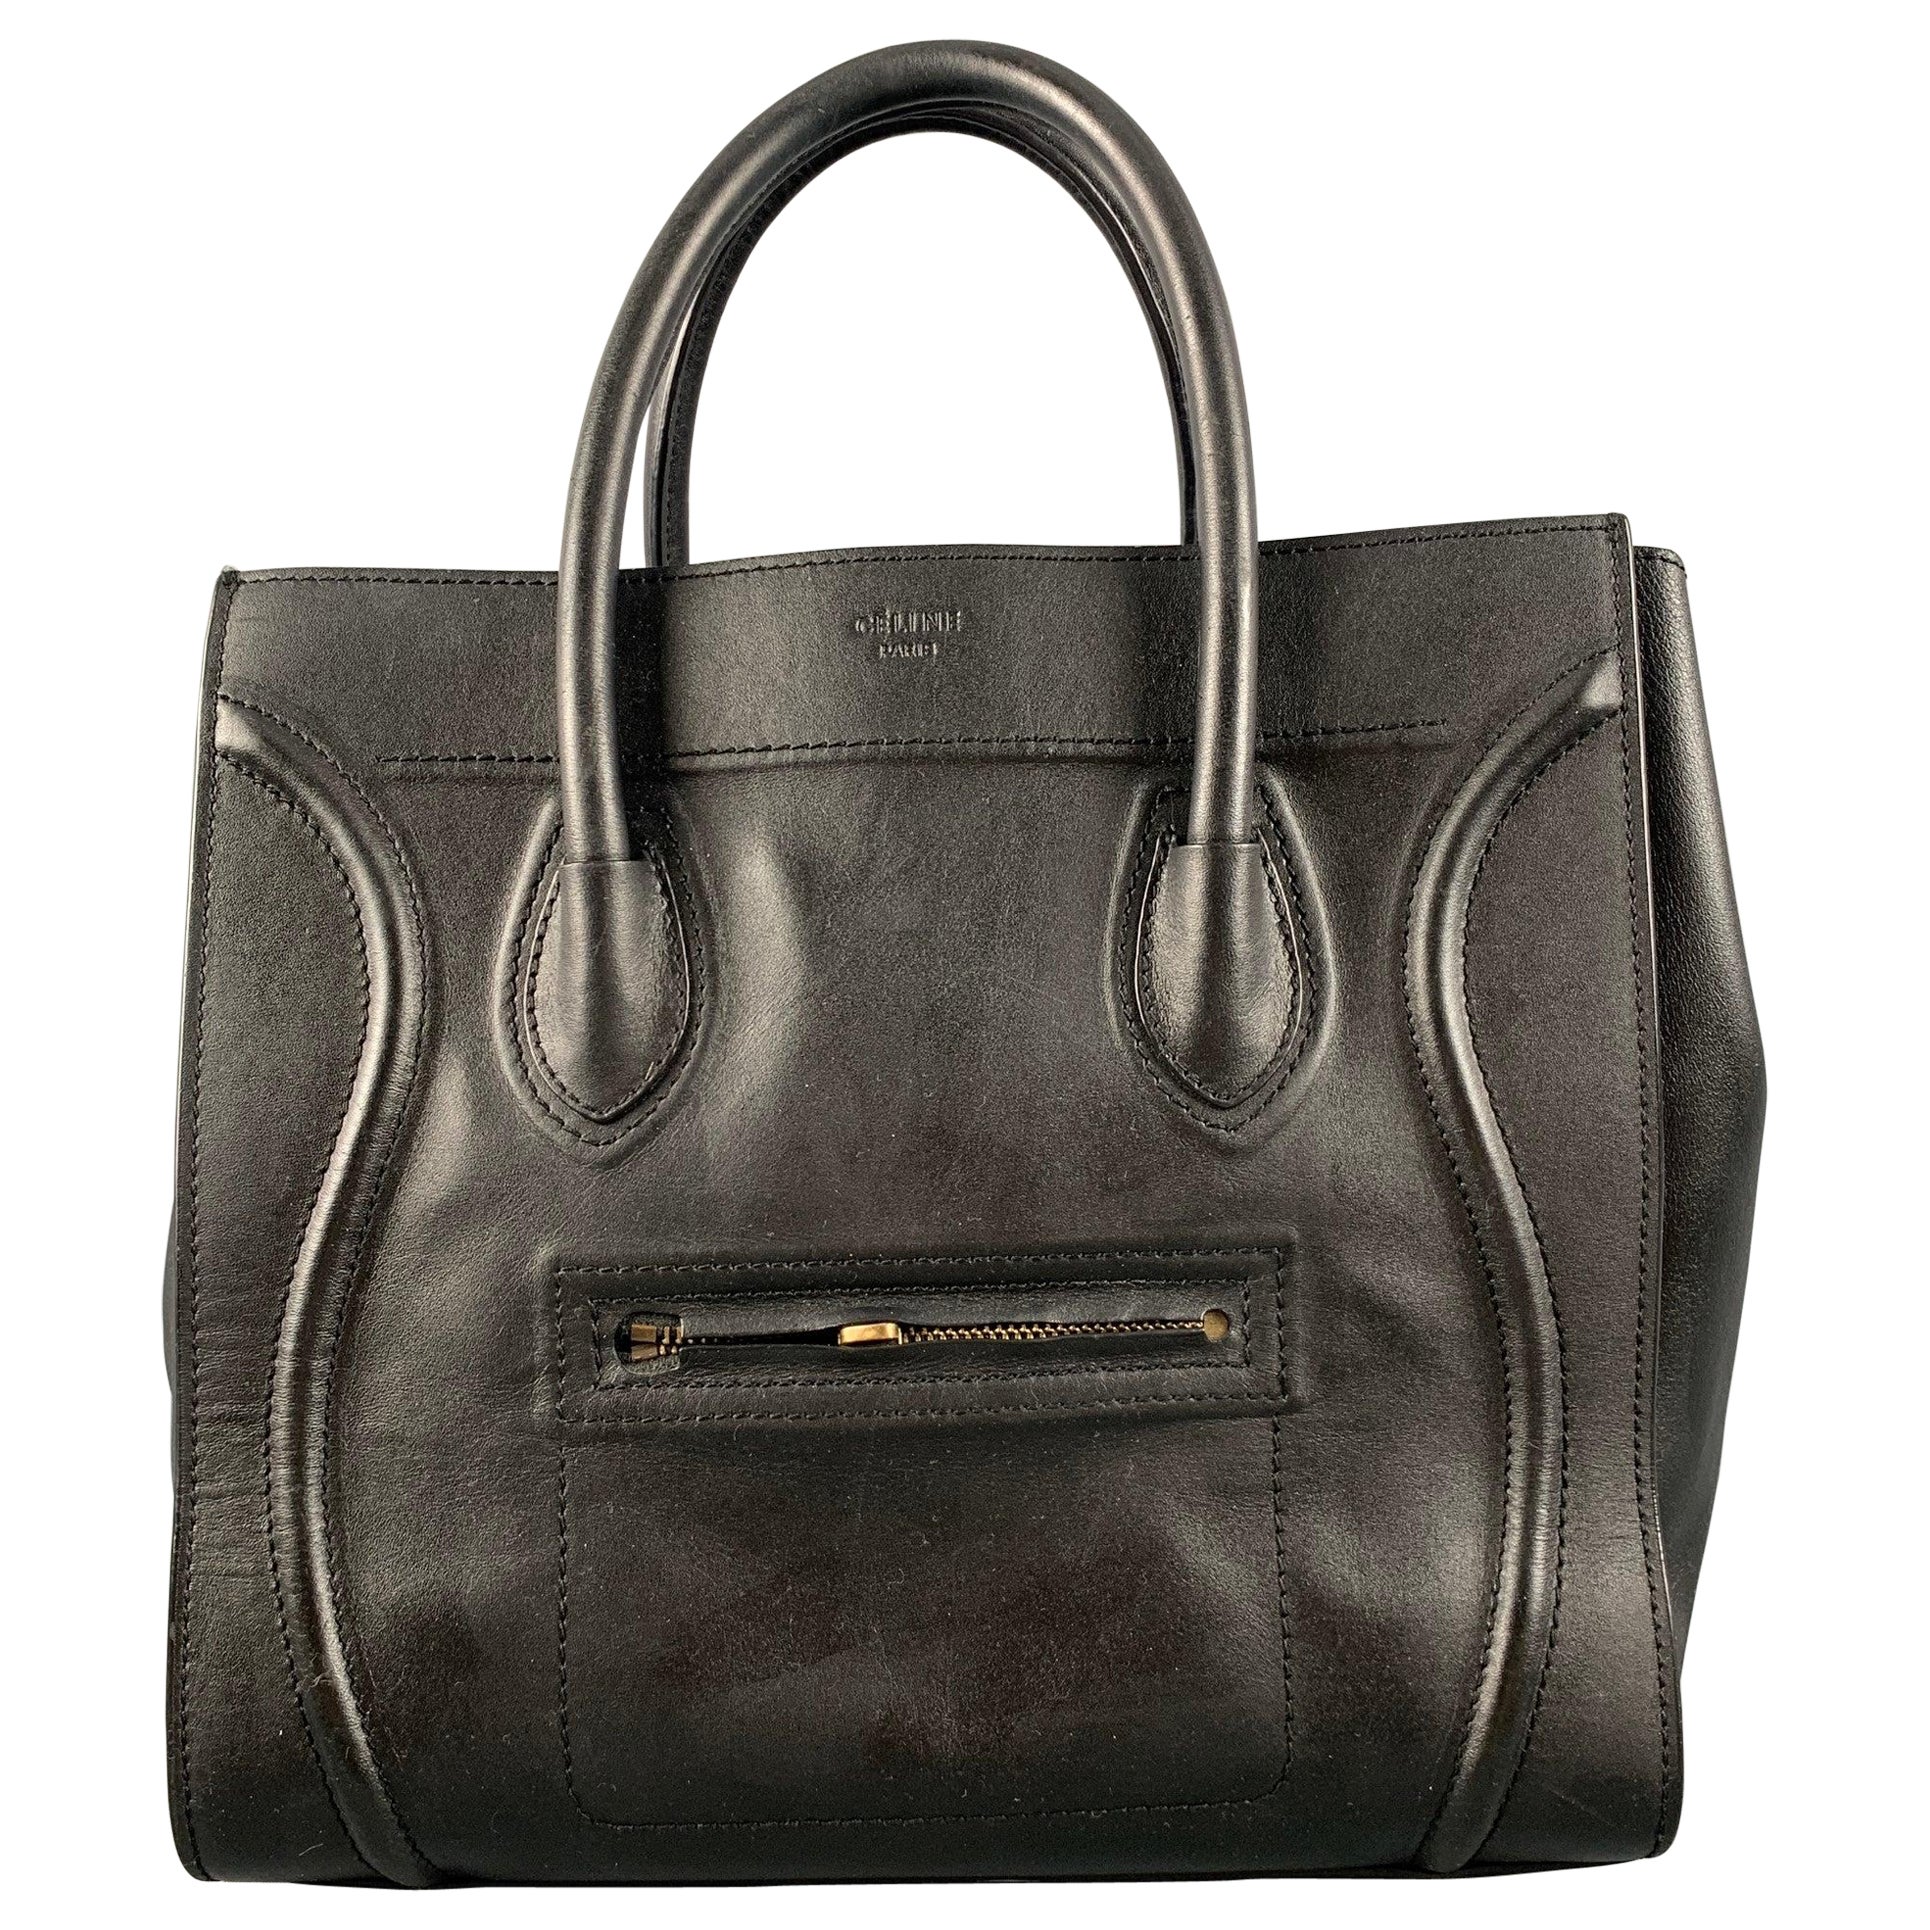 CELINE Black Leather Handbag Handbag For Sale